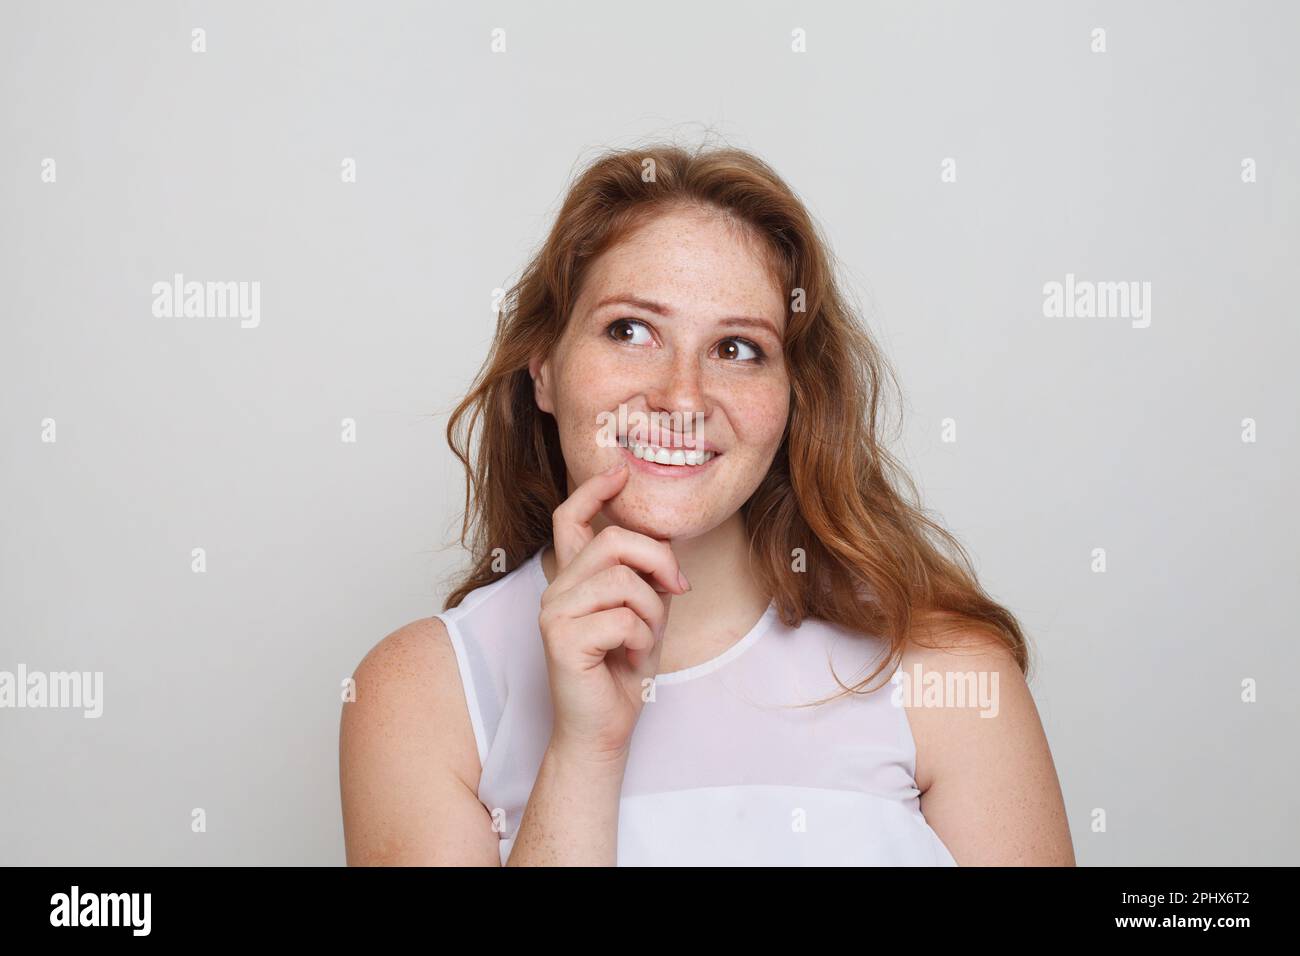 Retrato de mujer pelirroja alegre pensando mirando hacia arriba y sonriendo sobre fondo blanco Foto de stock